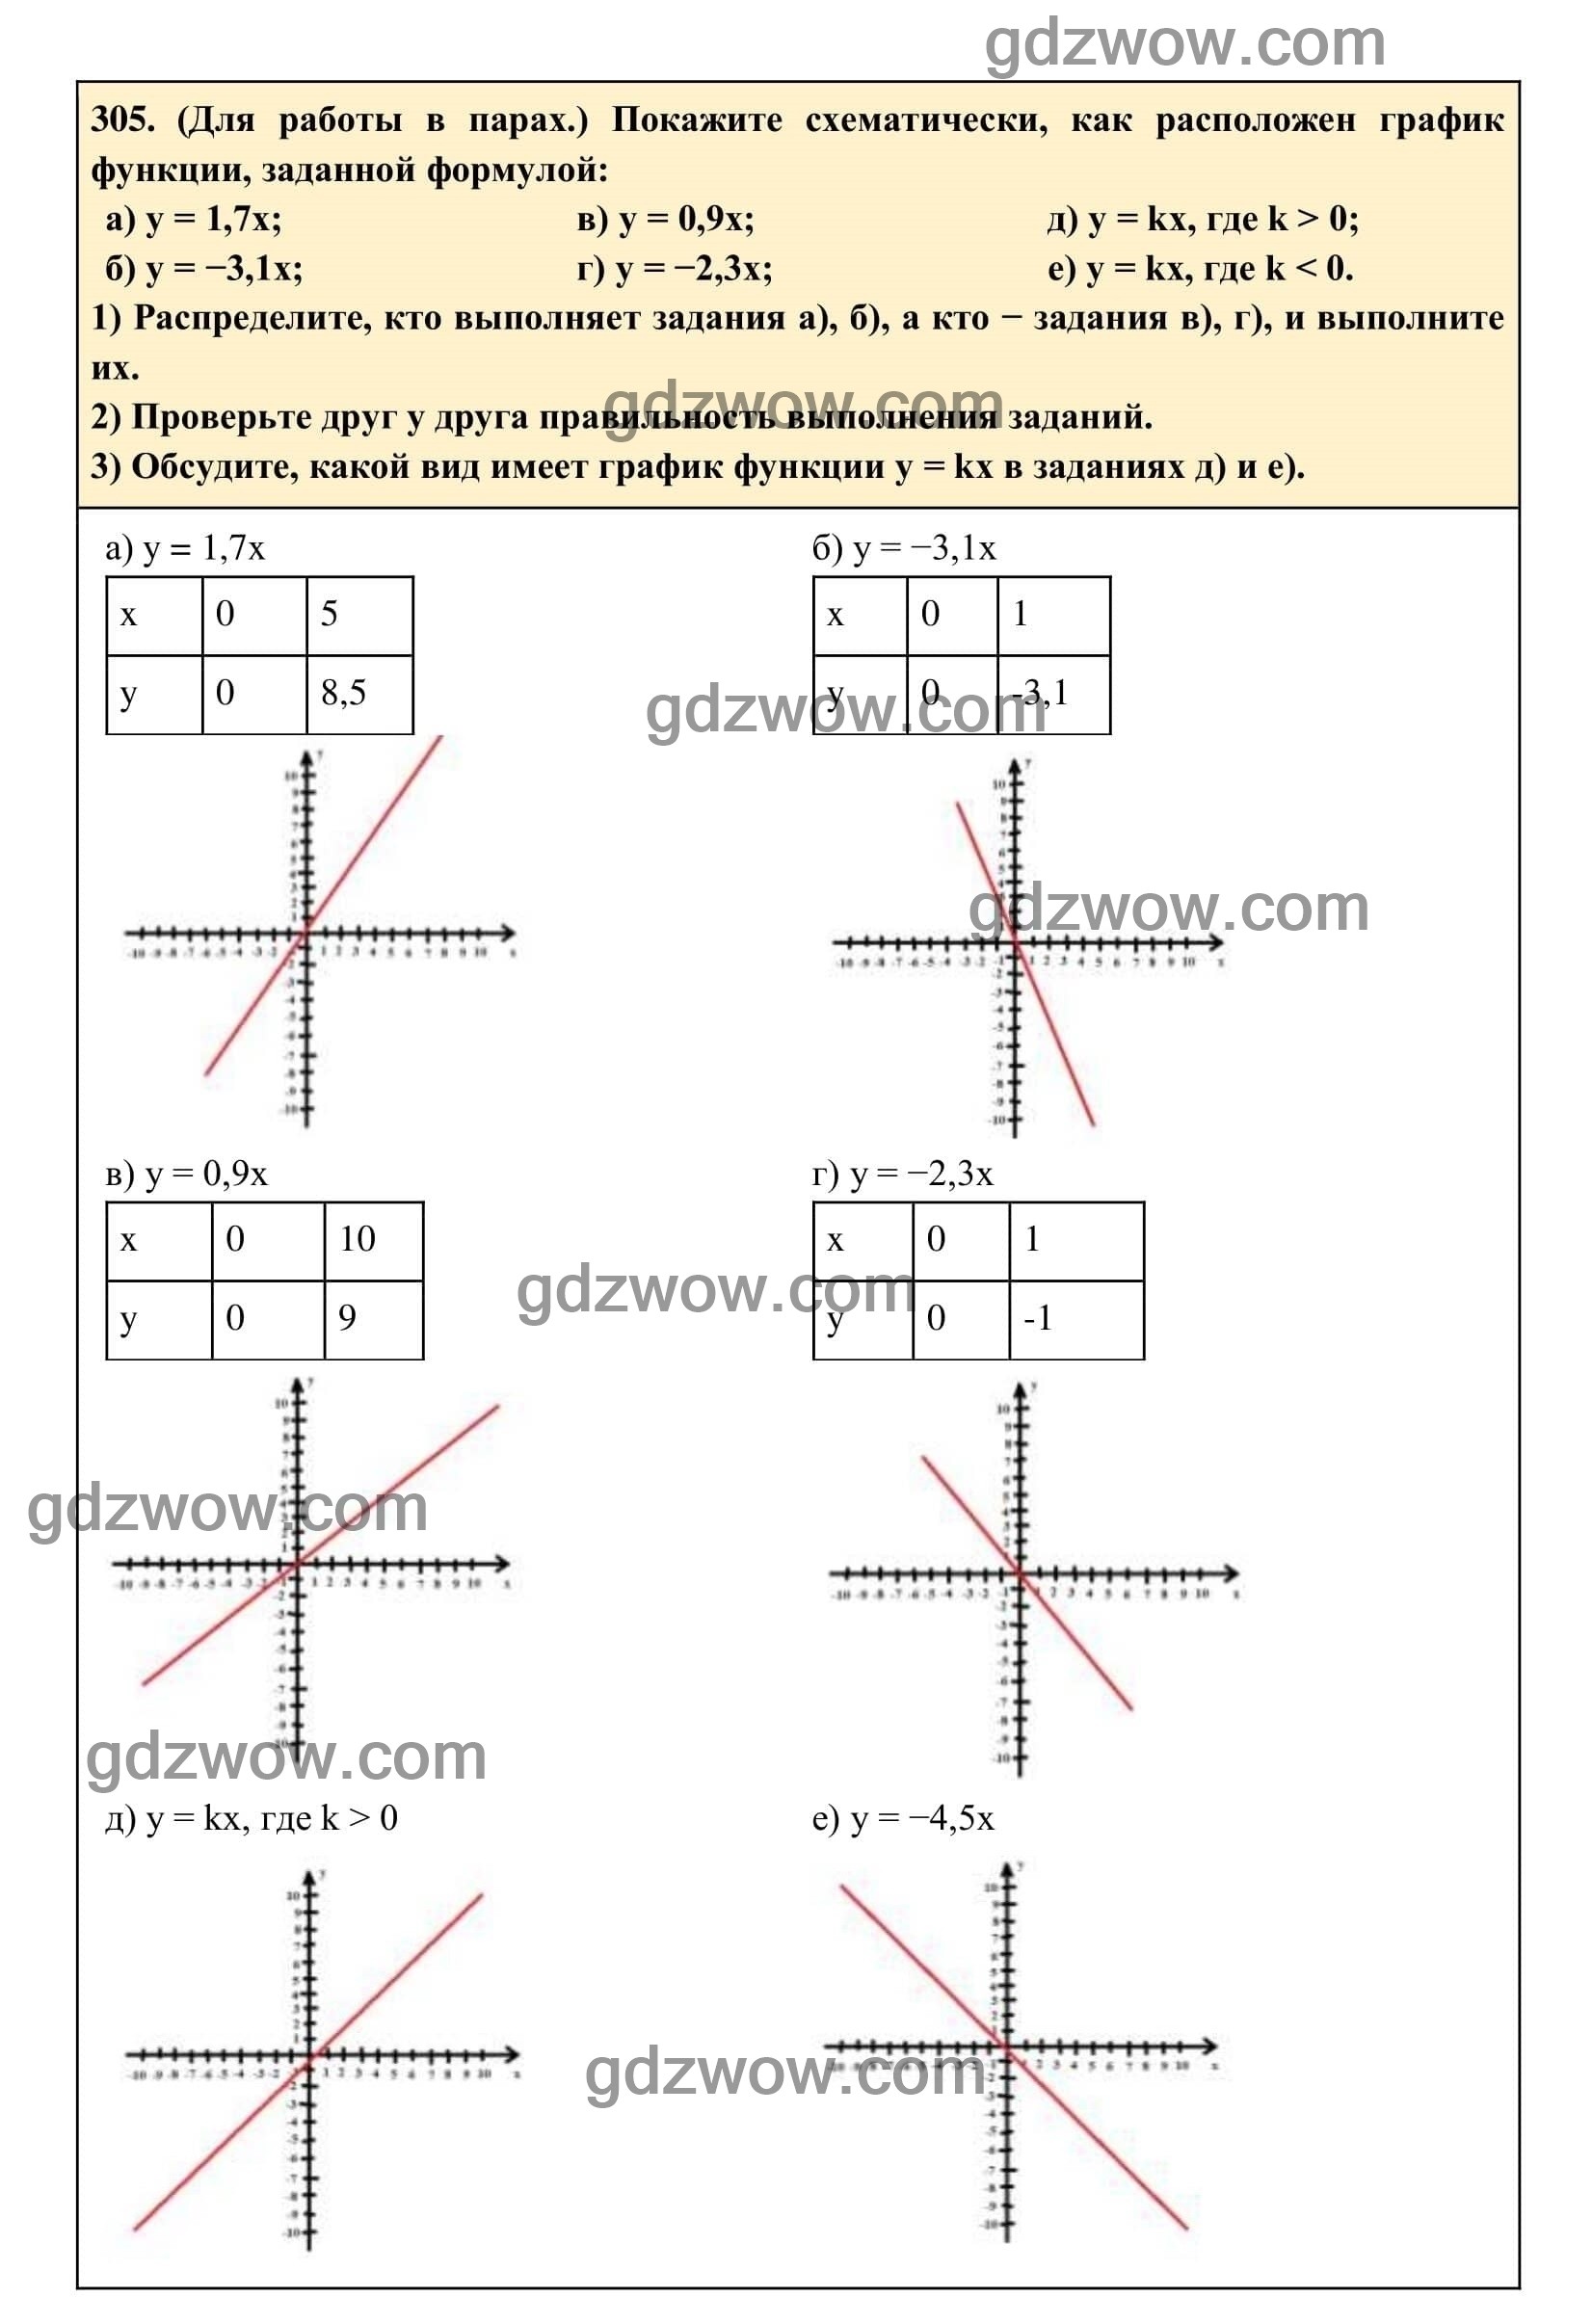 Упражнение 305 - ГДЗ по Алгебре 7 класс Учебник Макарычев (решебник) - GDZwow